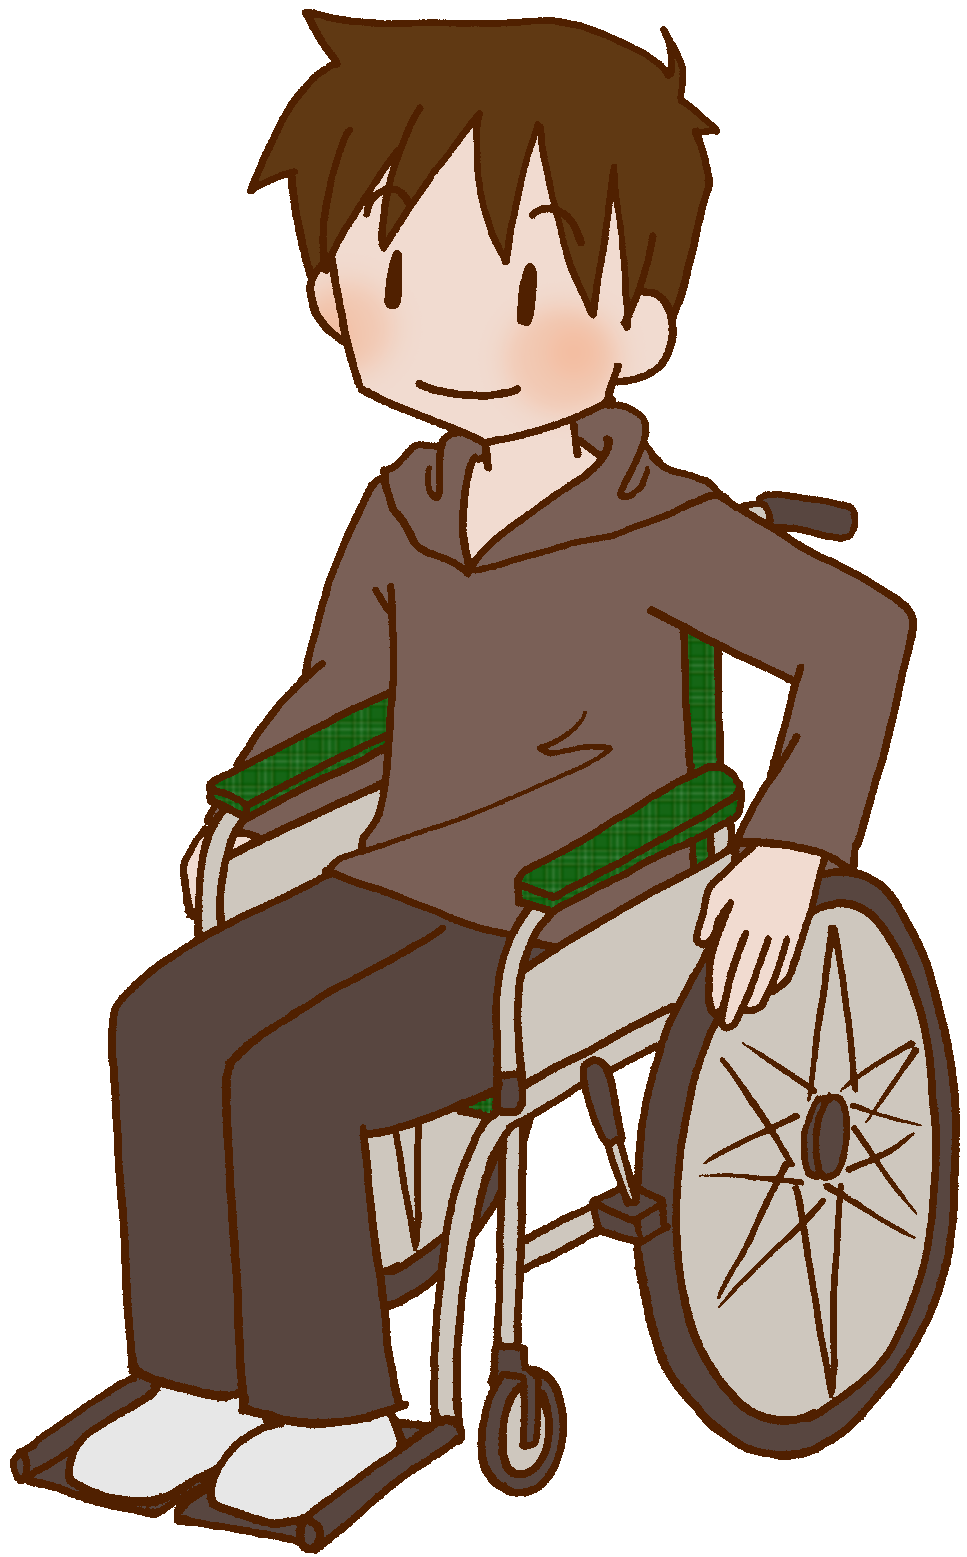 Otナガミネのリハビリイラスト集 患者 家族 青年 車イス 車椅子 車いす 障害者 怪我 病気 男性